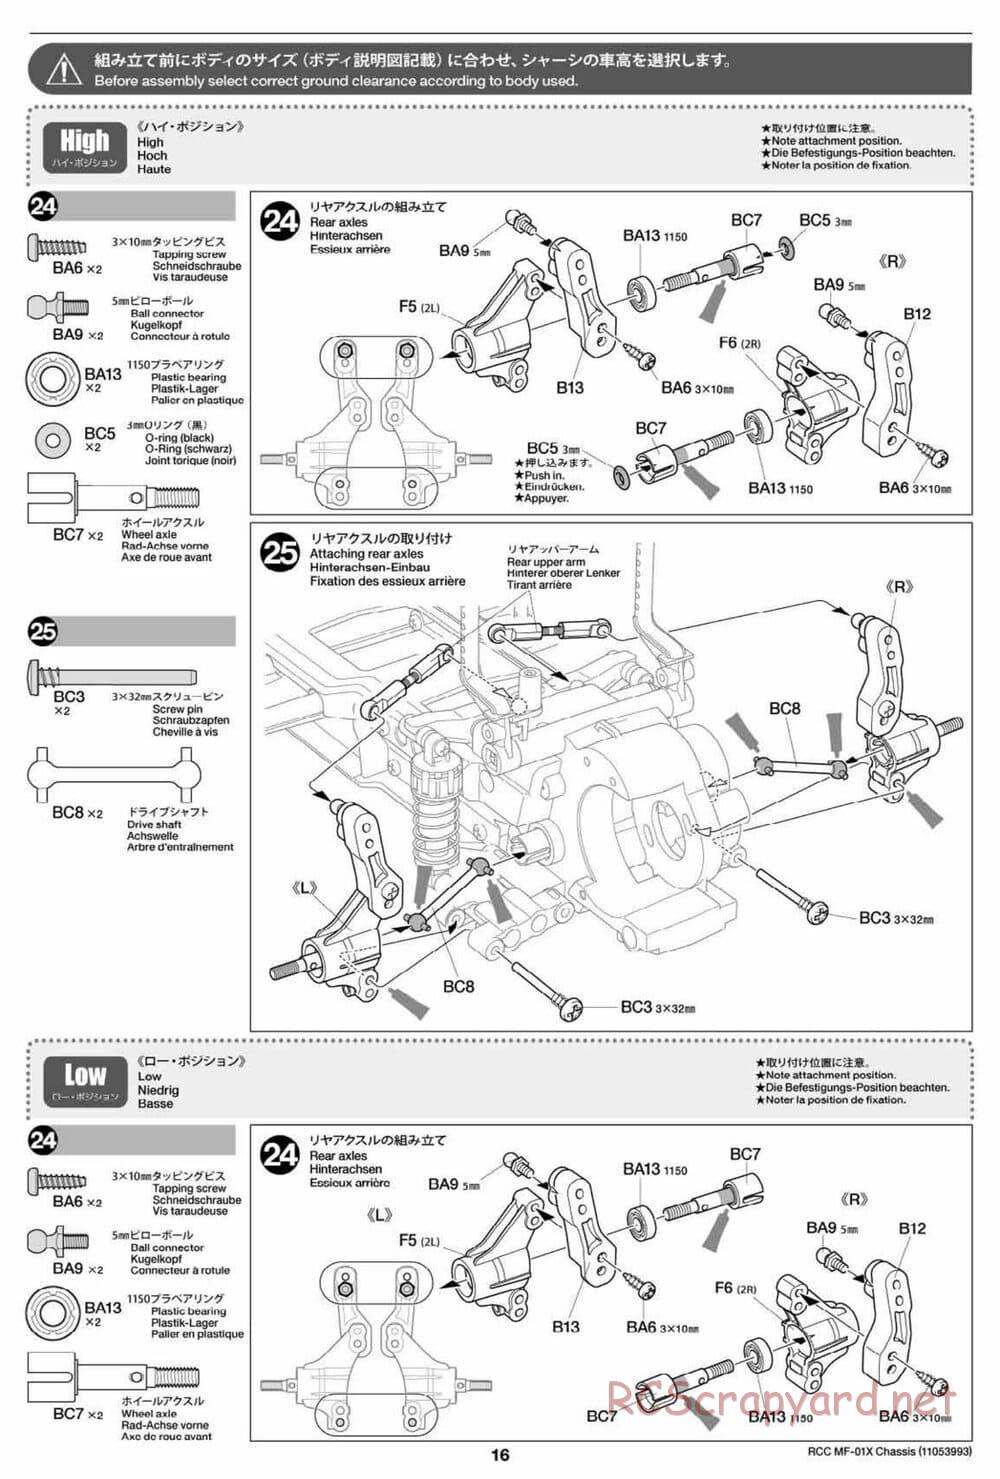 Tamiya - MF-01X Chassis - Manual - Page 16